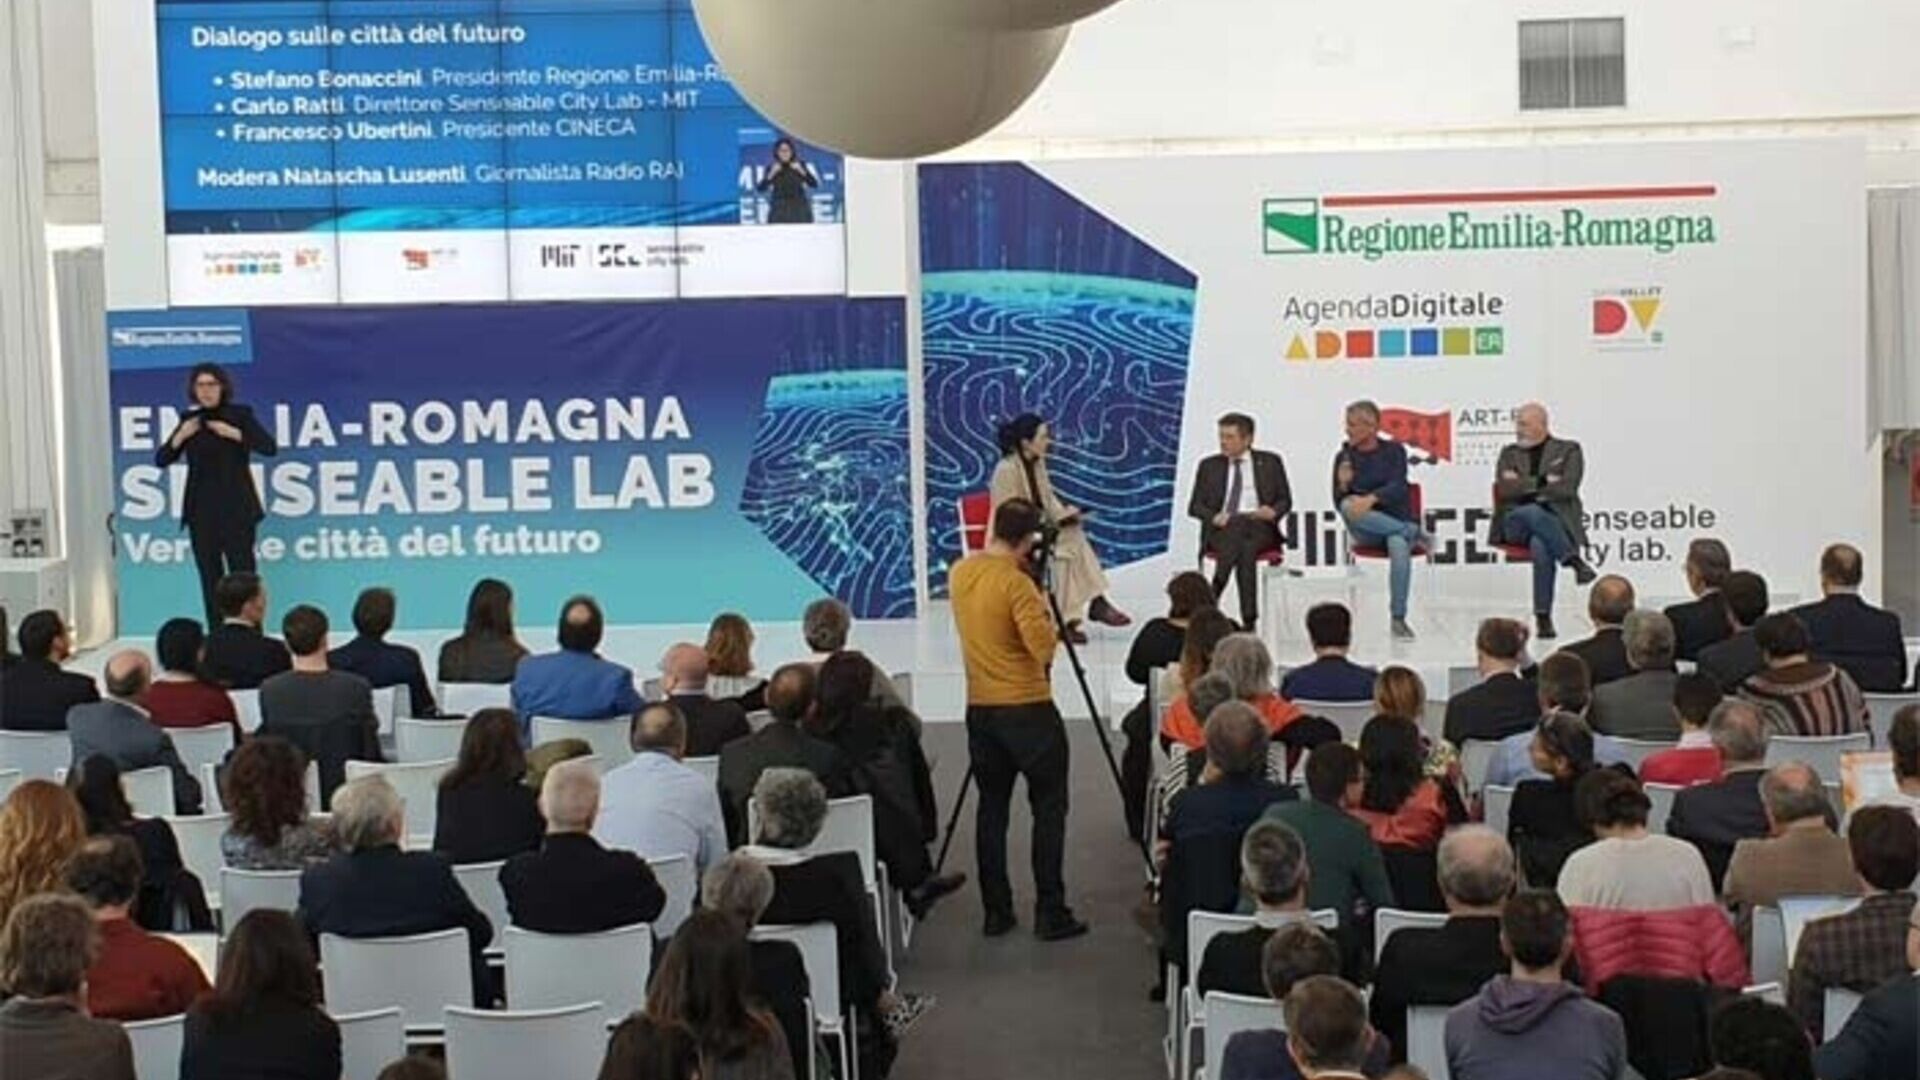 Viện Công nghệ Massachusetts: Phòng thí nghiệm Thành phố nhạy cảm của MIT sẽ đến Bologna Tecnopolo để hình dung các thành phố trong tương lai nhờ sự hợp tác với Vùng Emilia-Romagna